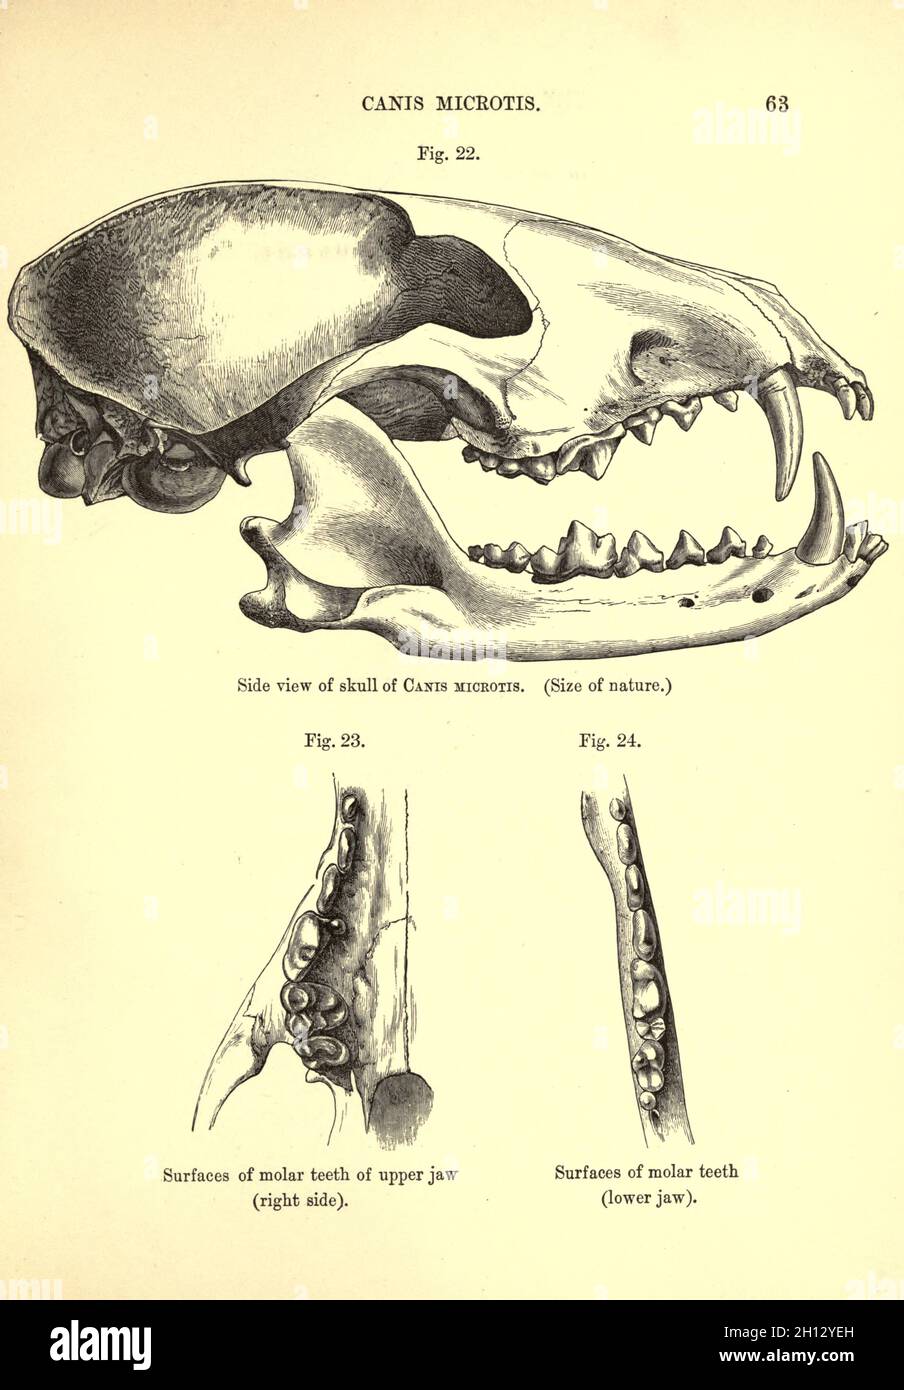 Crâne du chien à oreilles courtes, illustration du XIXe siècle Banque D'Images